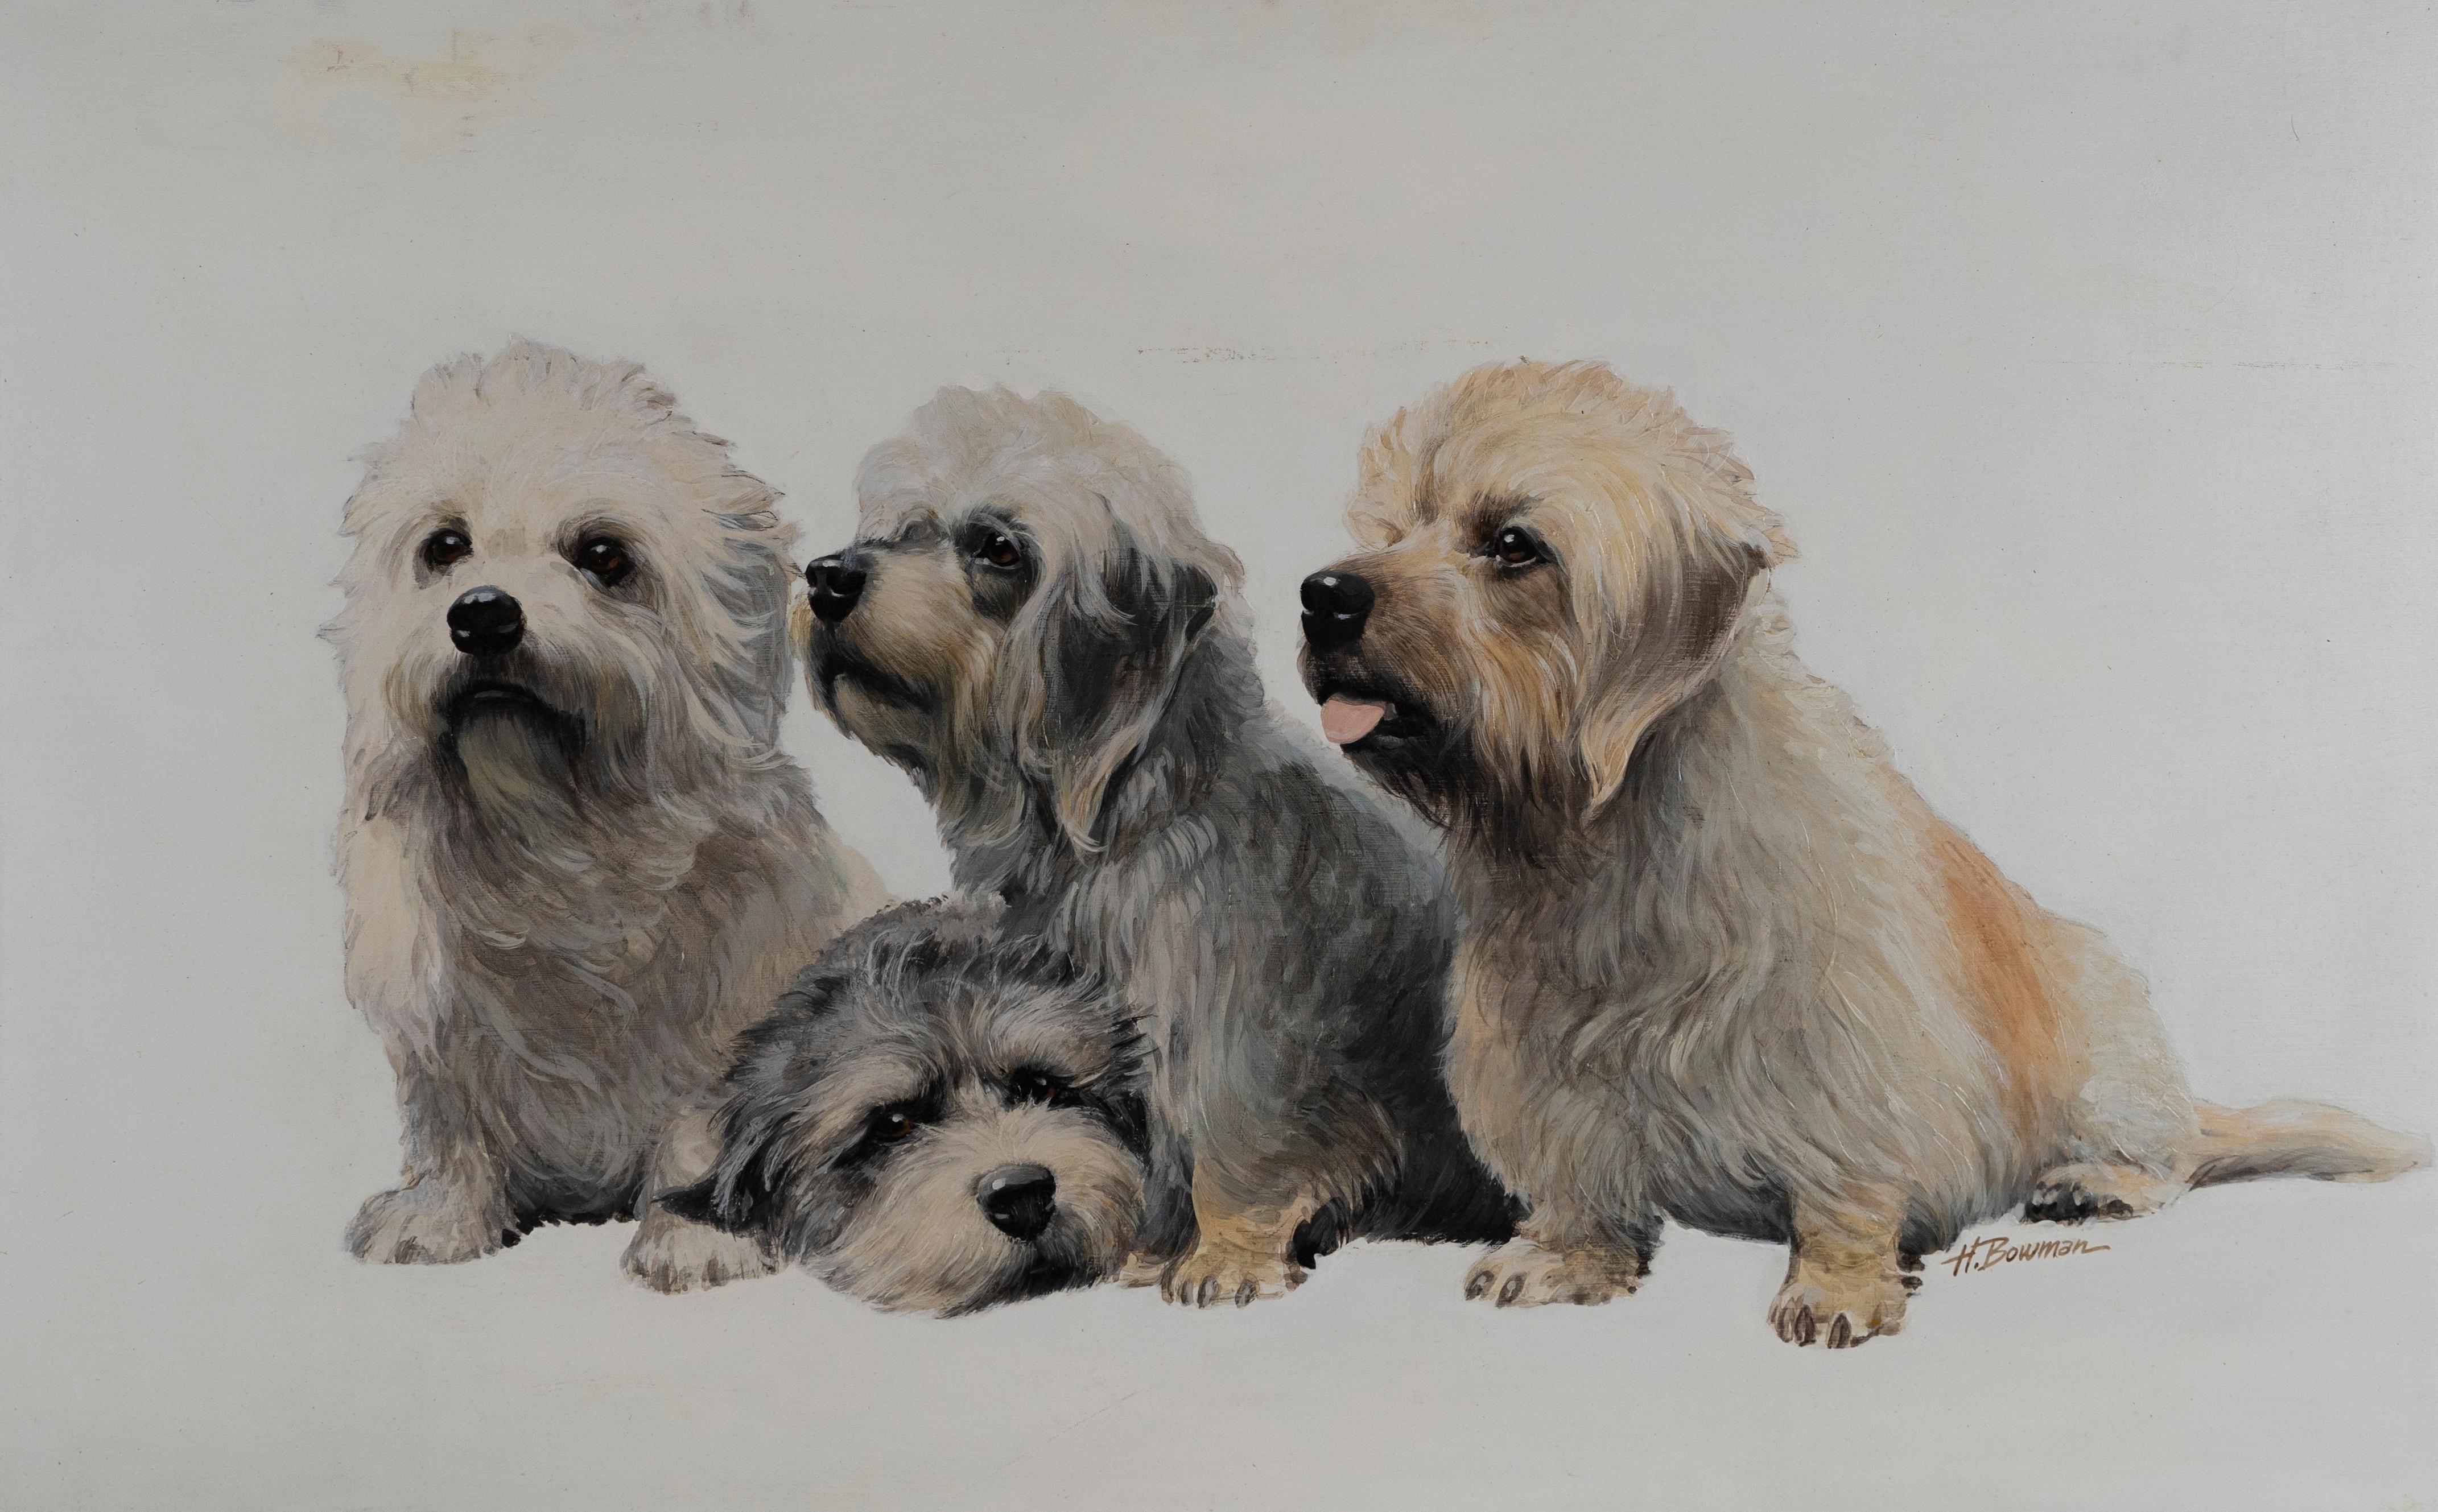 Original-realistisches Ölgemälde der American School, signierte Terrier-Hundeporträts (Grau), Abstract Painting, von Unknown